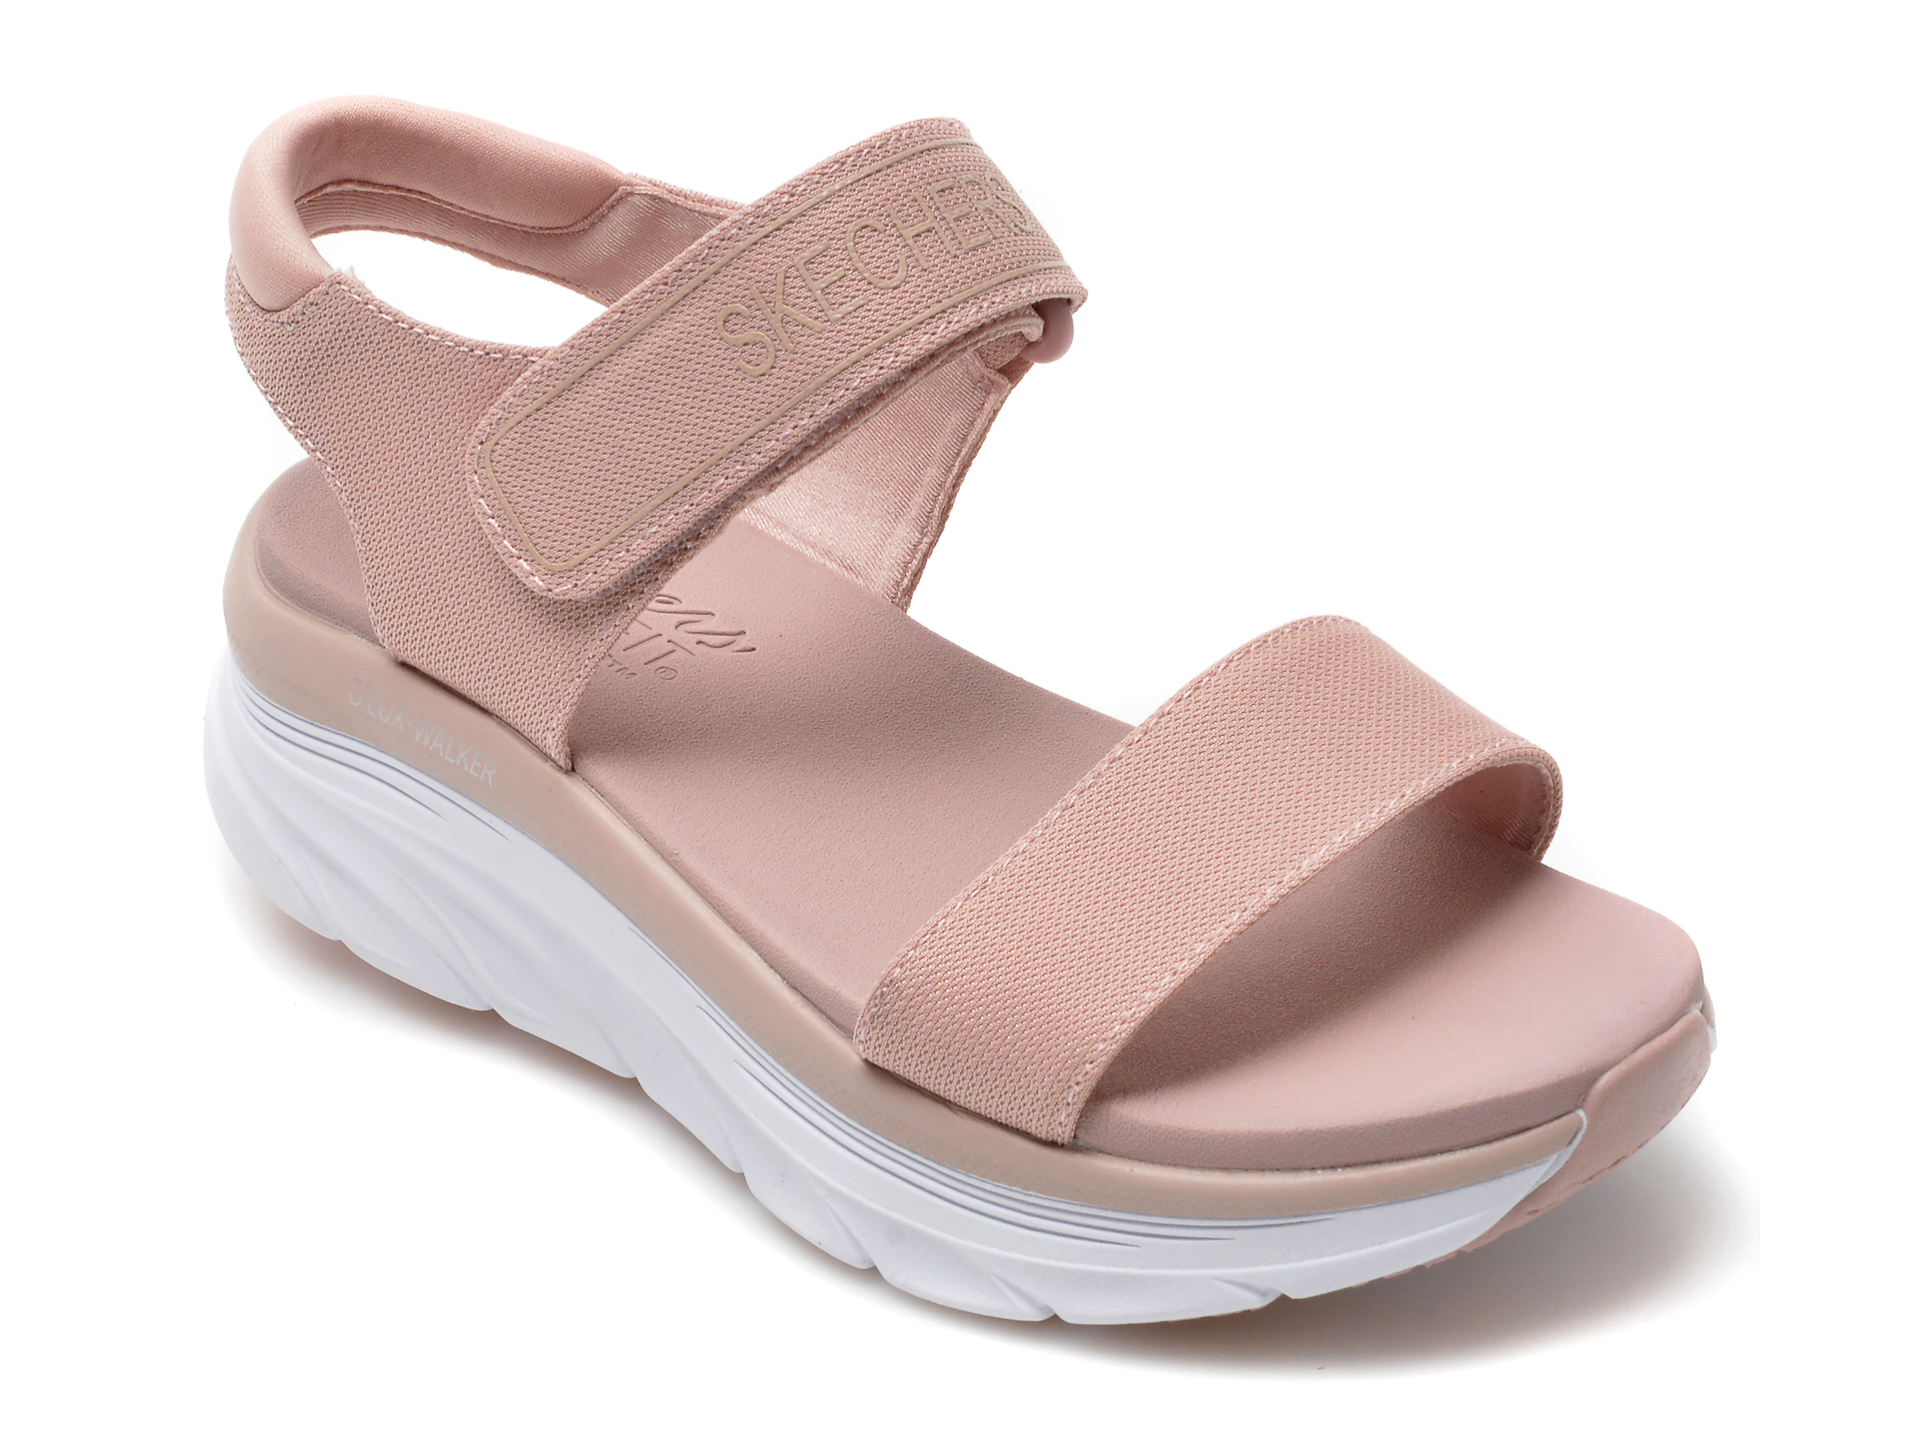 Sandale SKECHERS roz, D LUX WALKER, din material textil otter.ro otter.ro